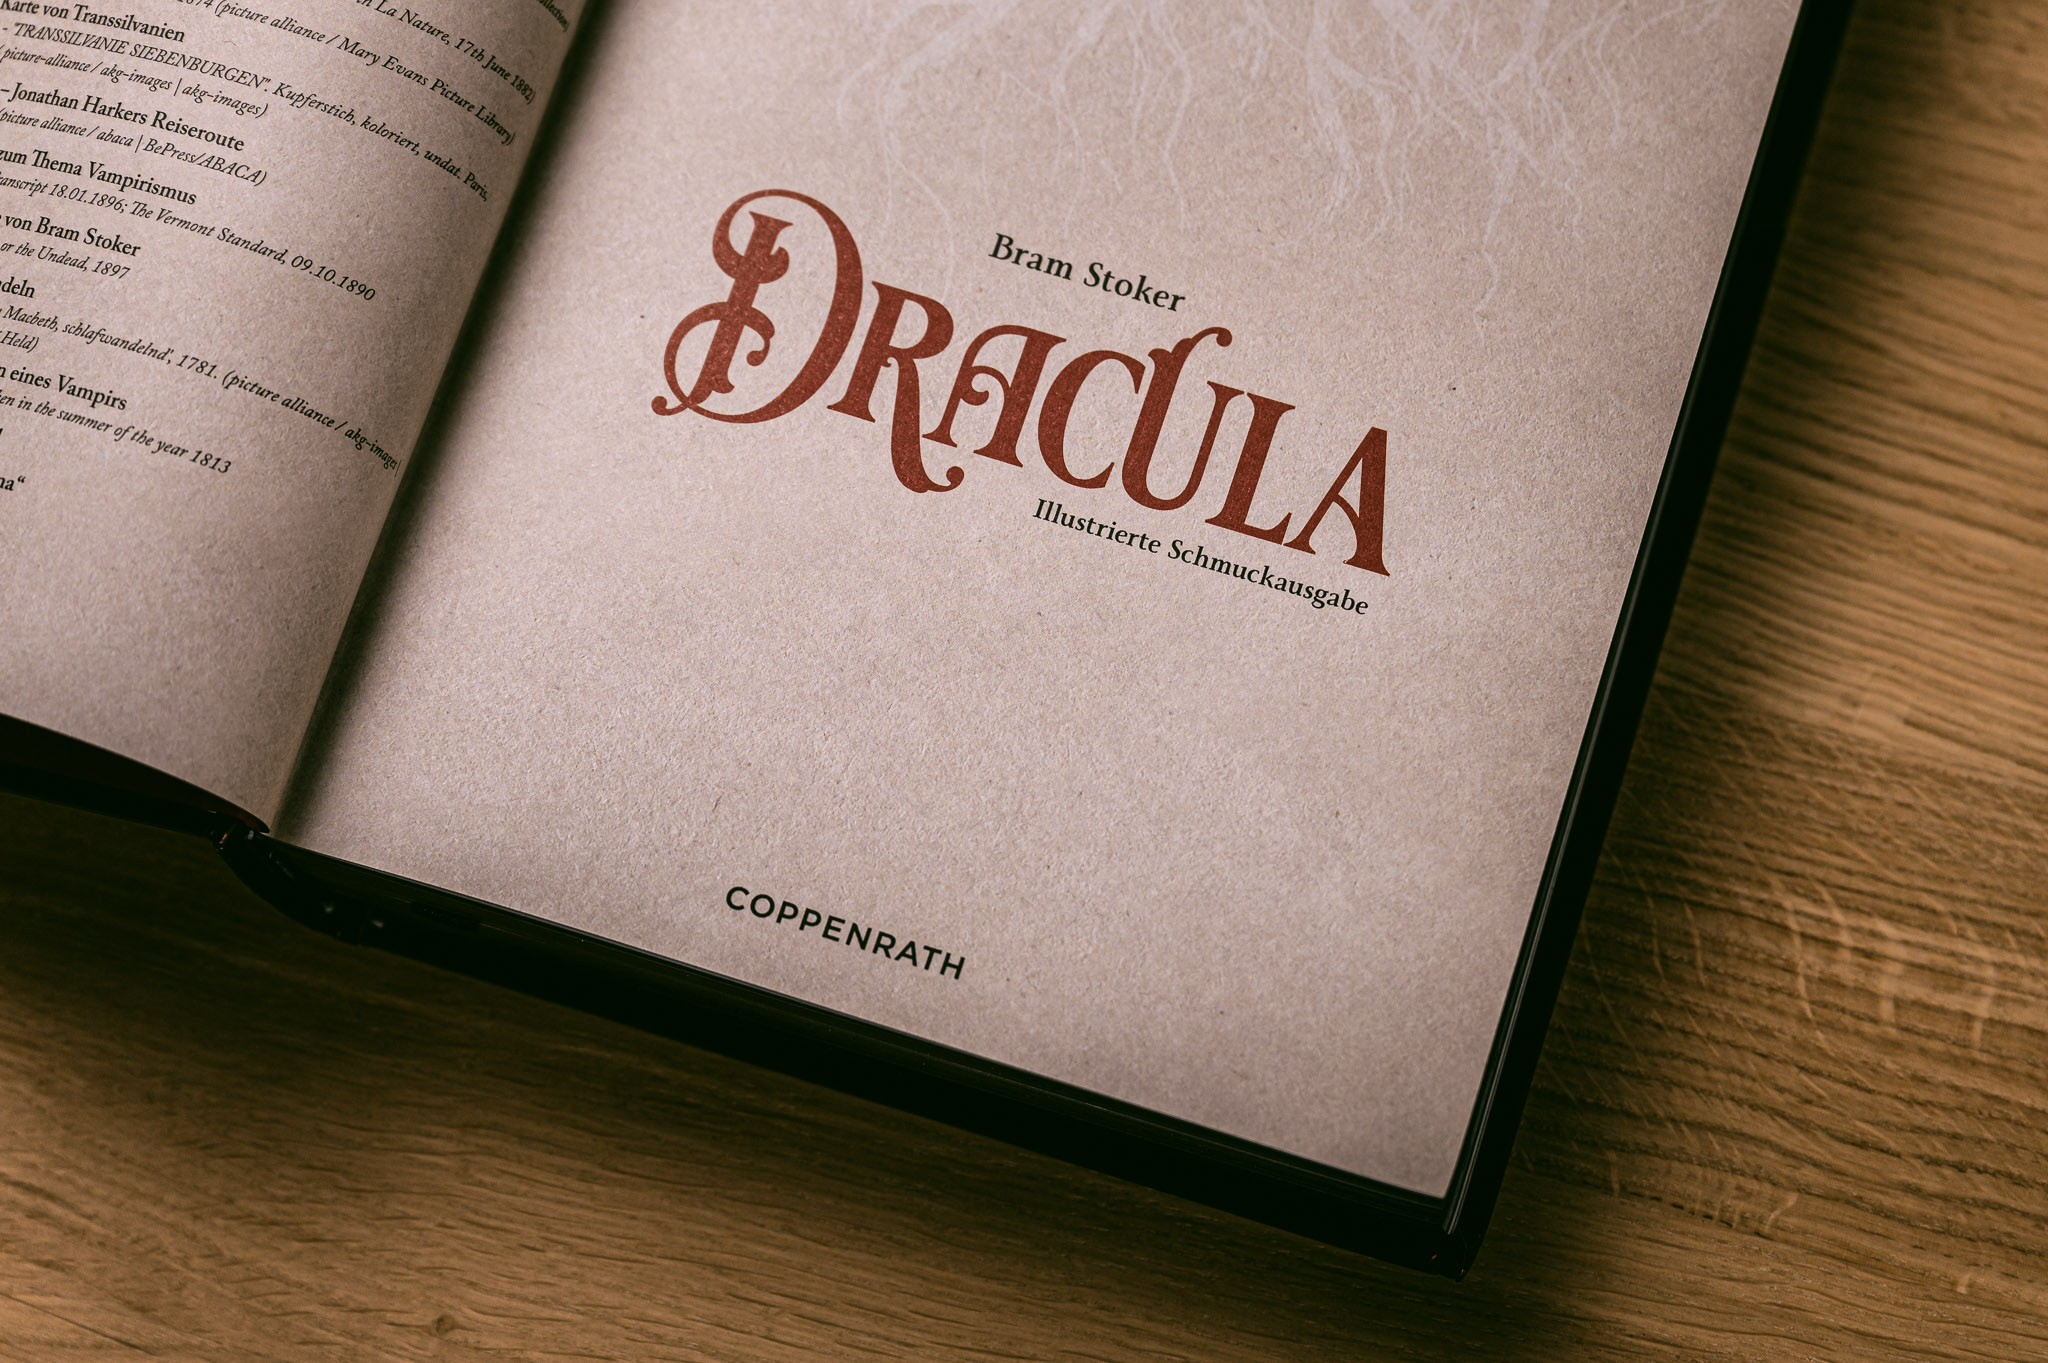 Dracula - Illustrierte Schmuckausgabe